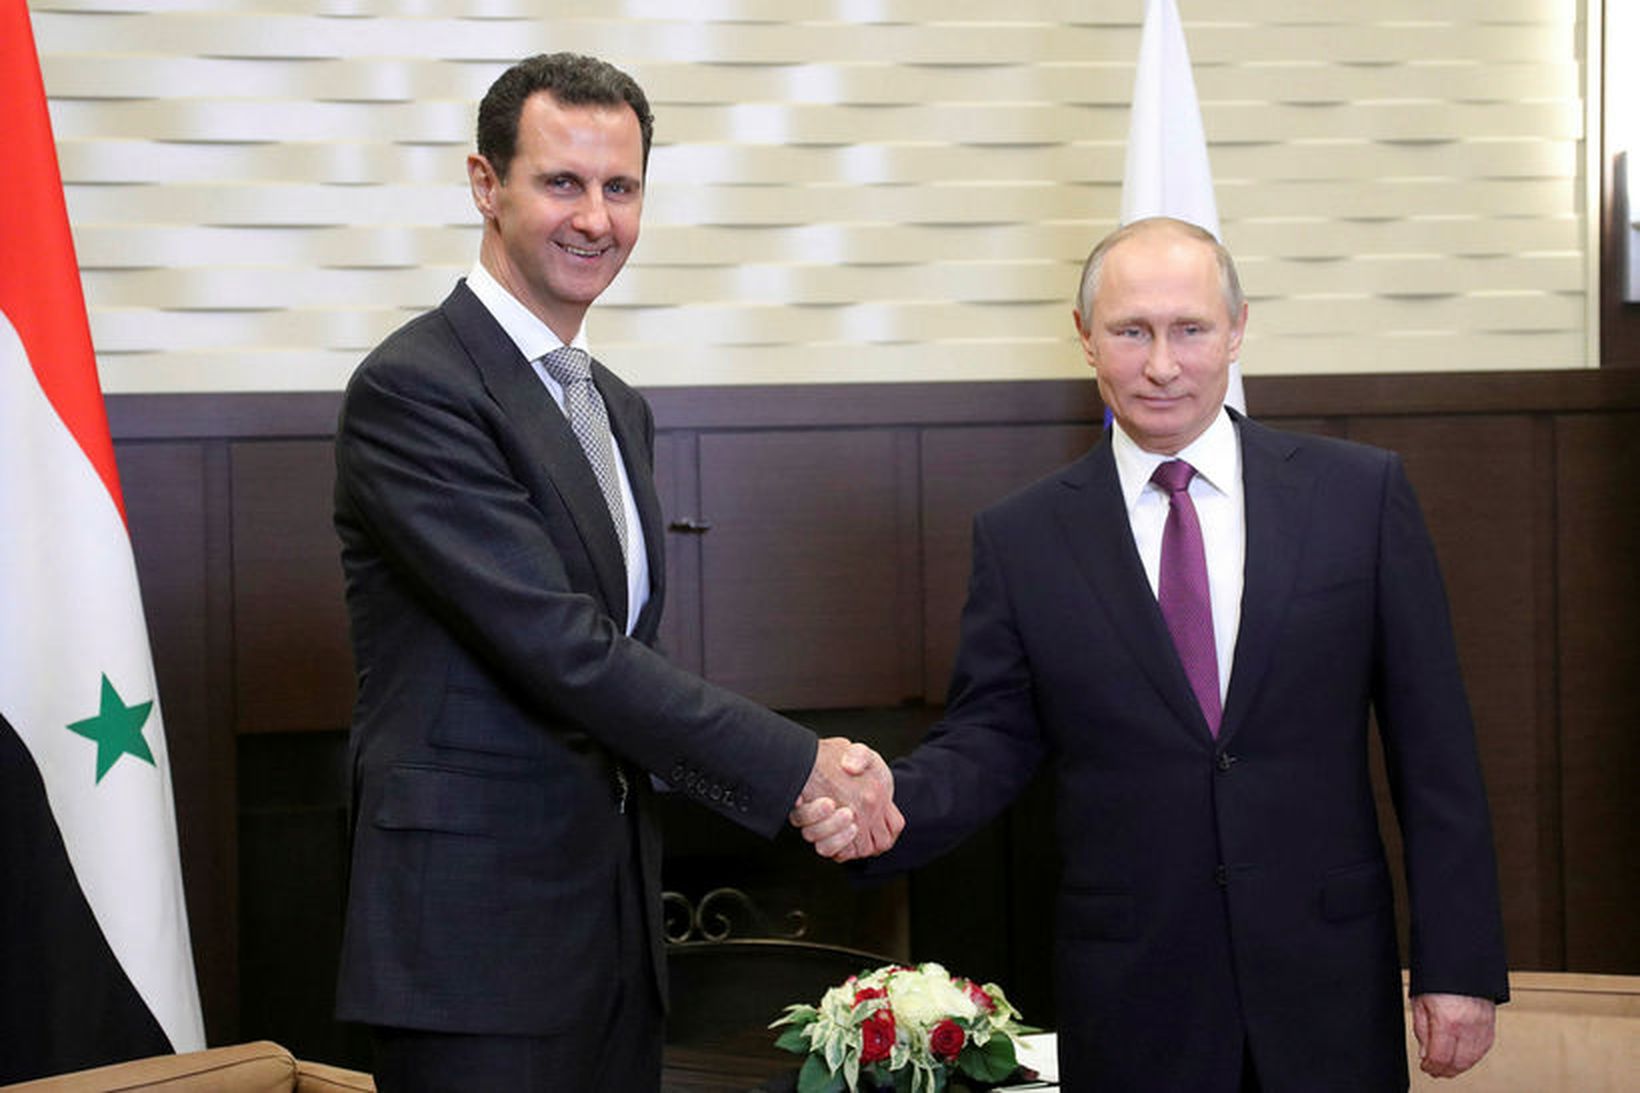 Vladimir Pútín ásamt Bashar al-Assad, forseta Sýrlands.